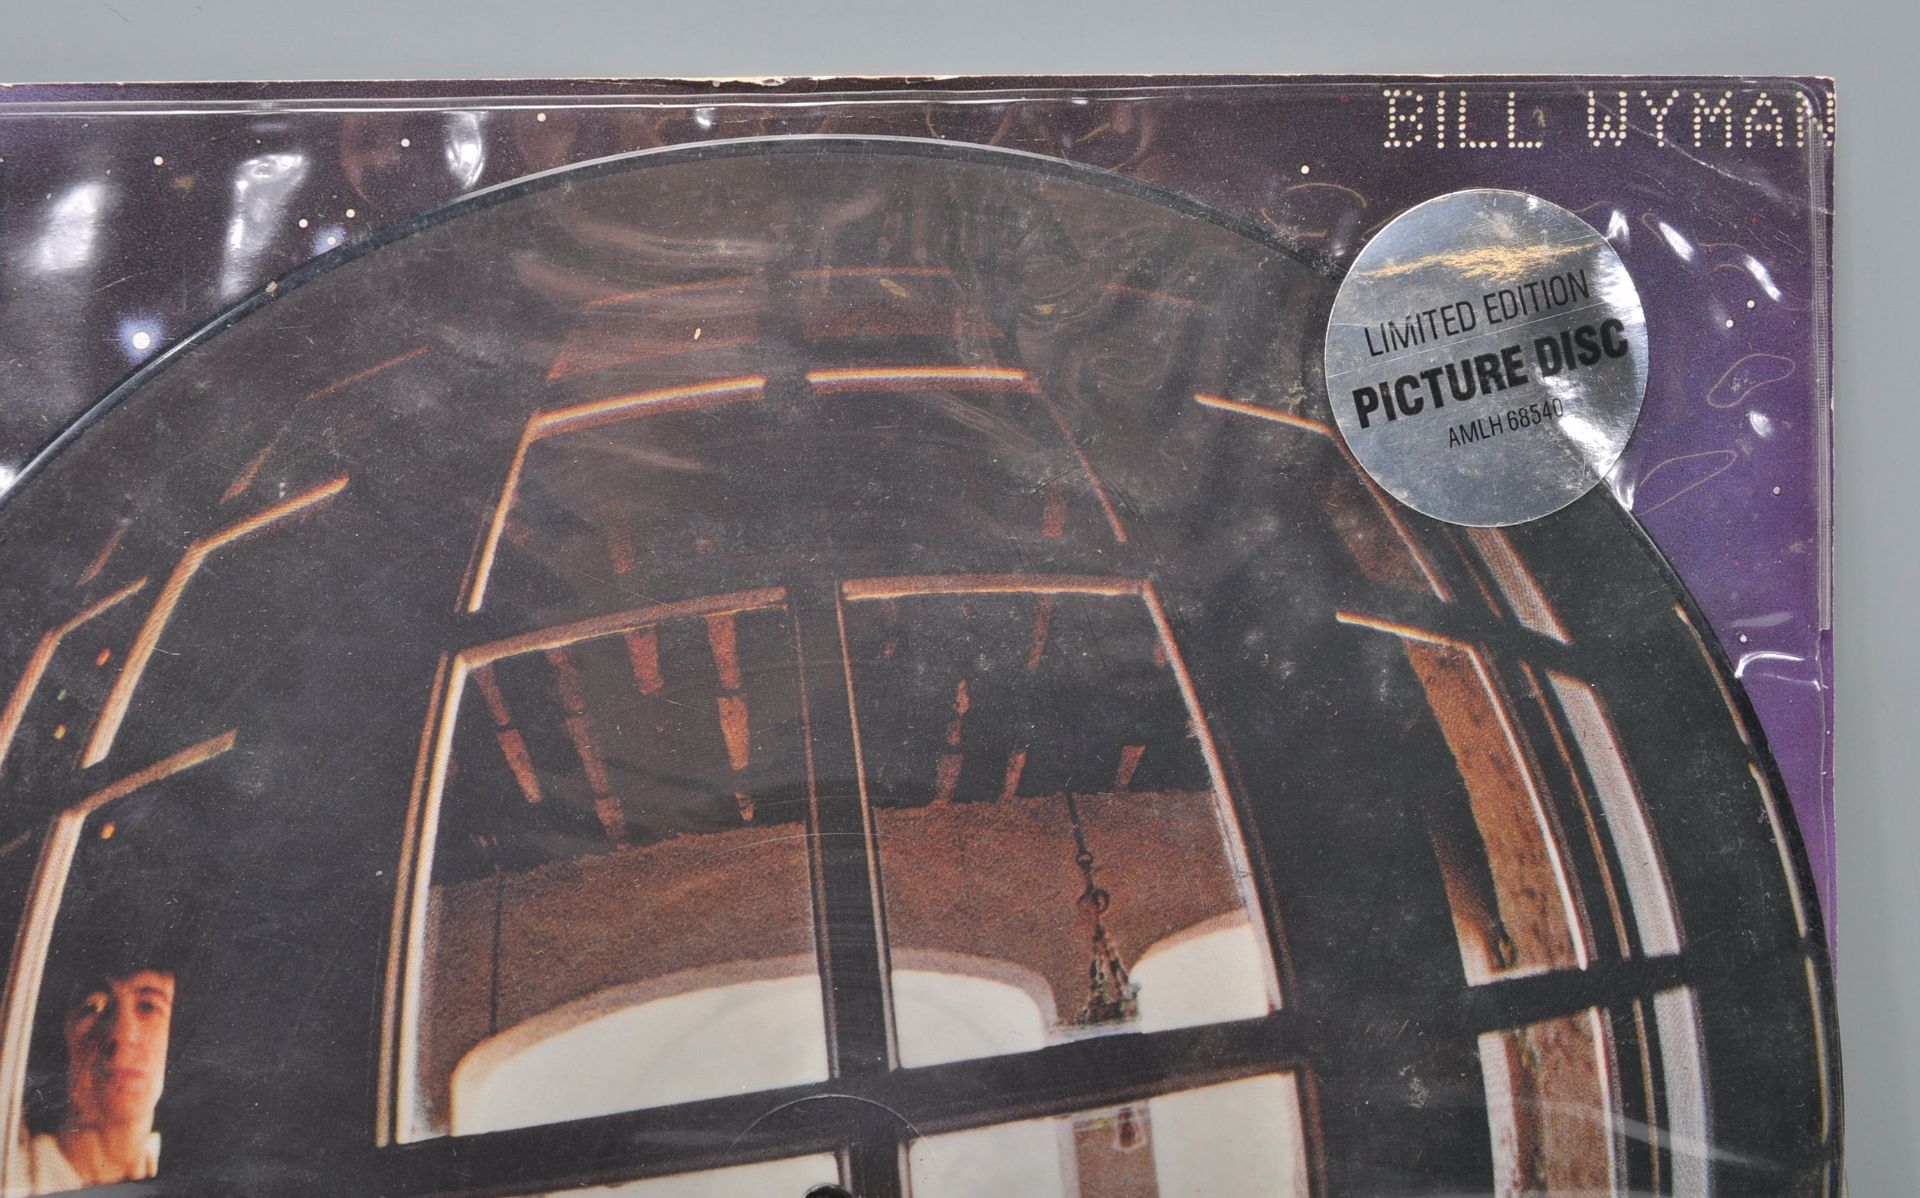 Vinyl long play LP record picture disc album by Bi - Bild 2 aus 8